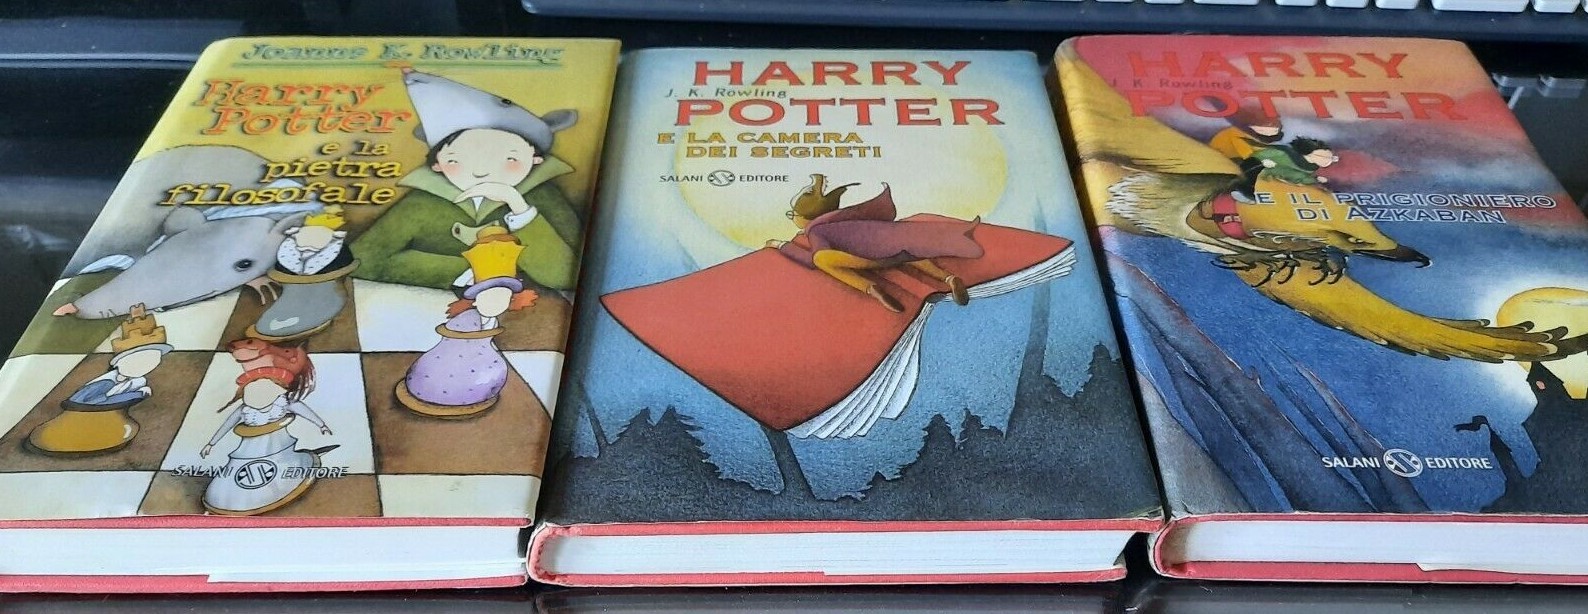 La collezione dei primi 7 Harry Potter su